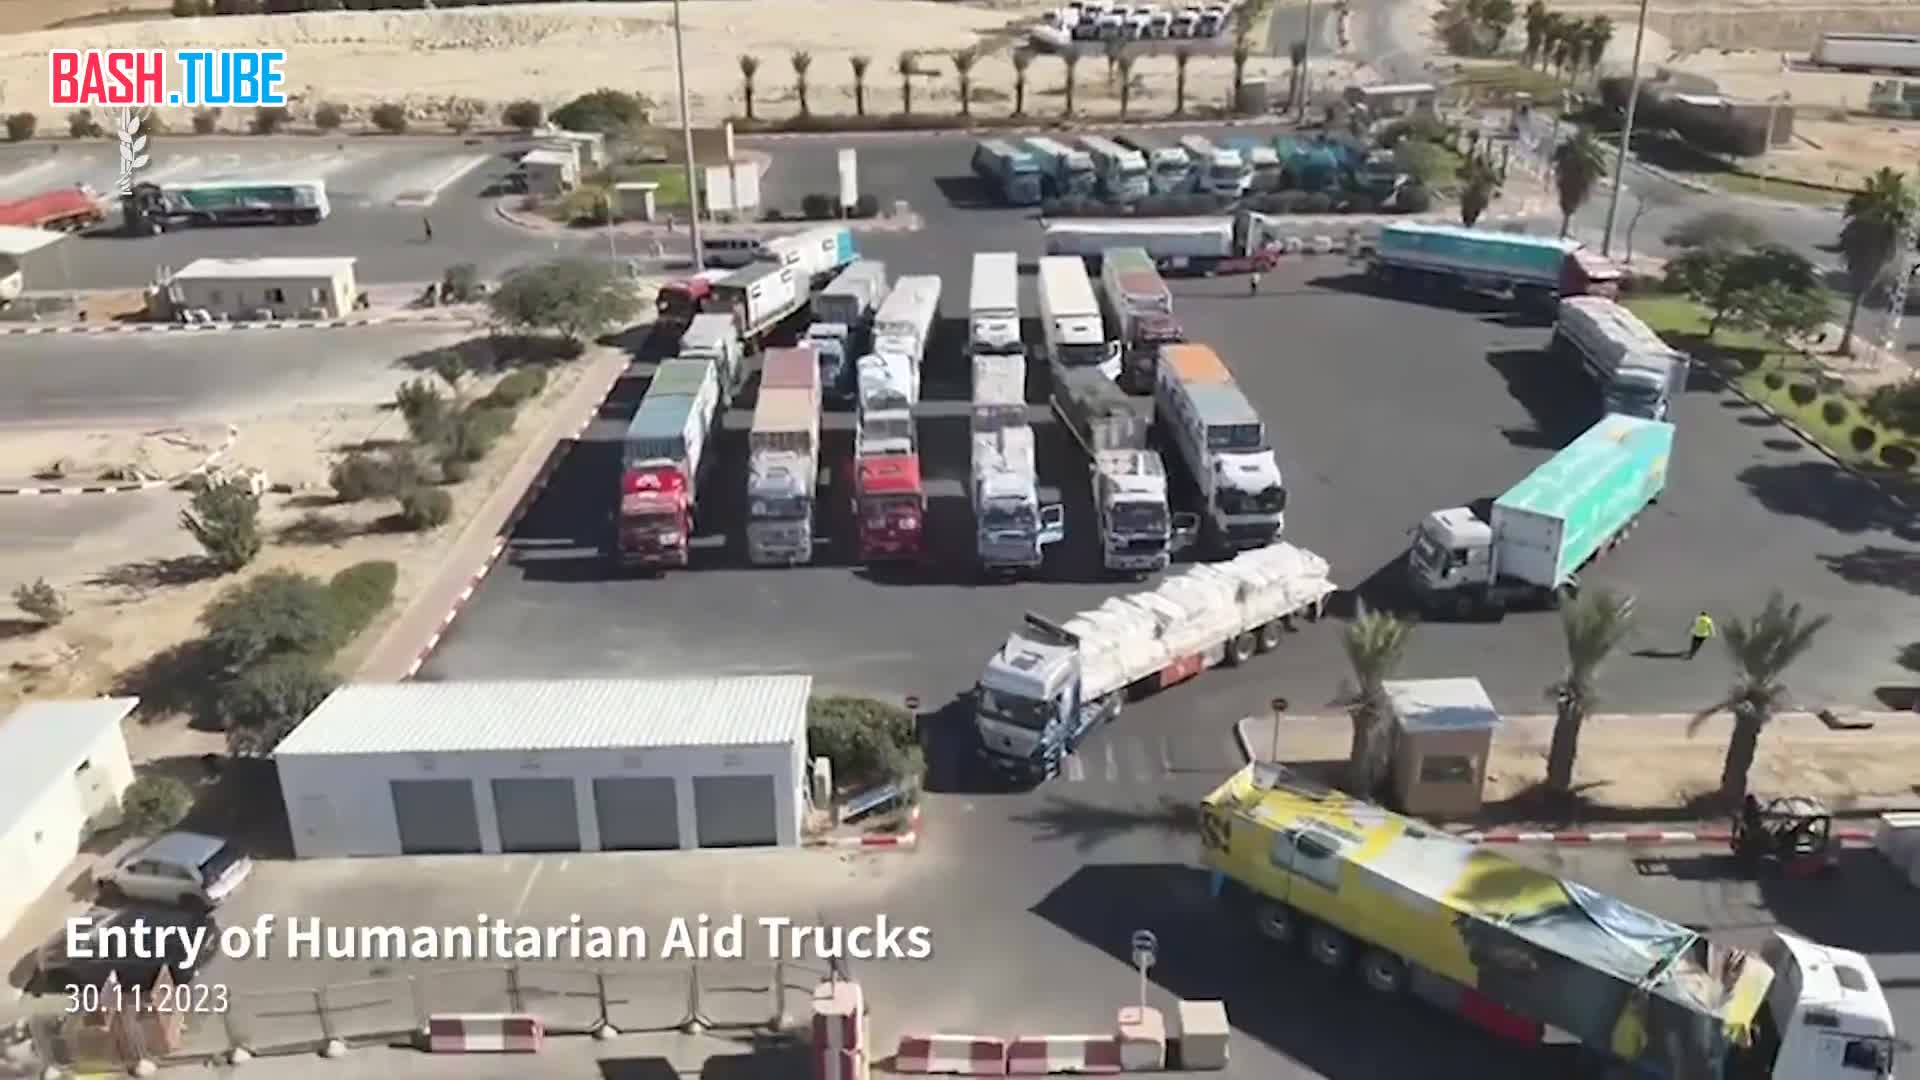  200 грузовиков с гуманитарной помощью отправились в сектор Газа из Египта в рамках перемирия с ХАМАС